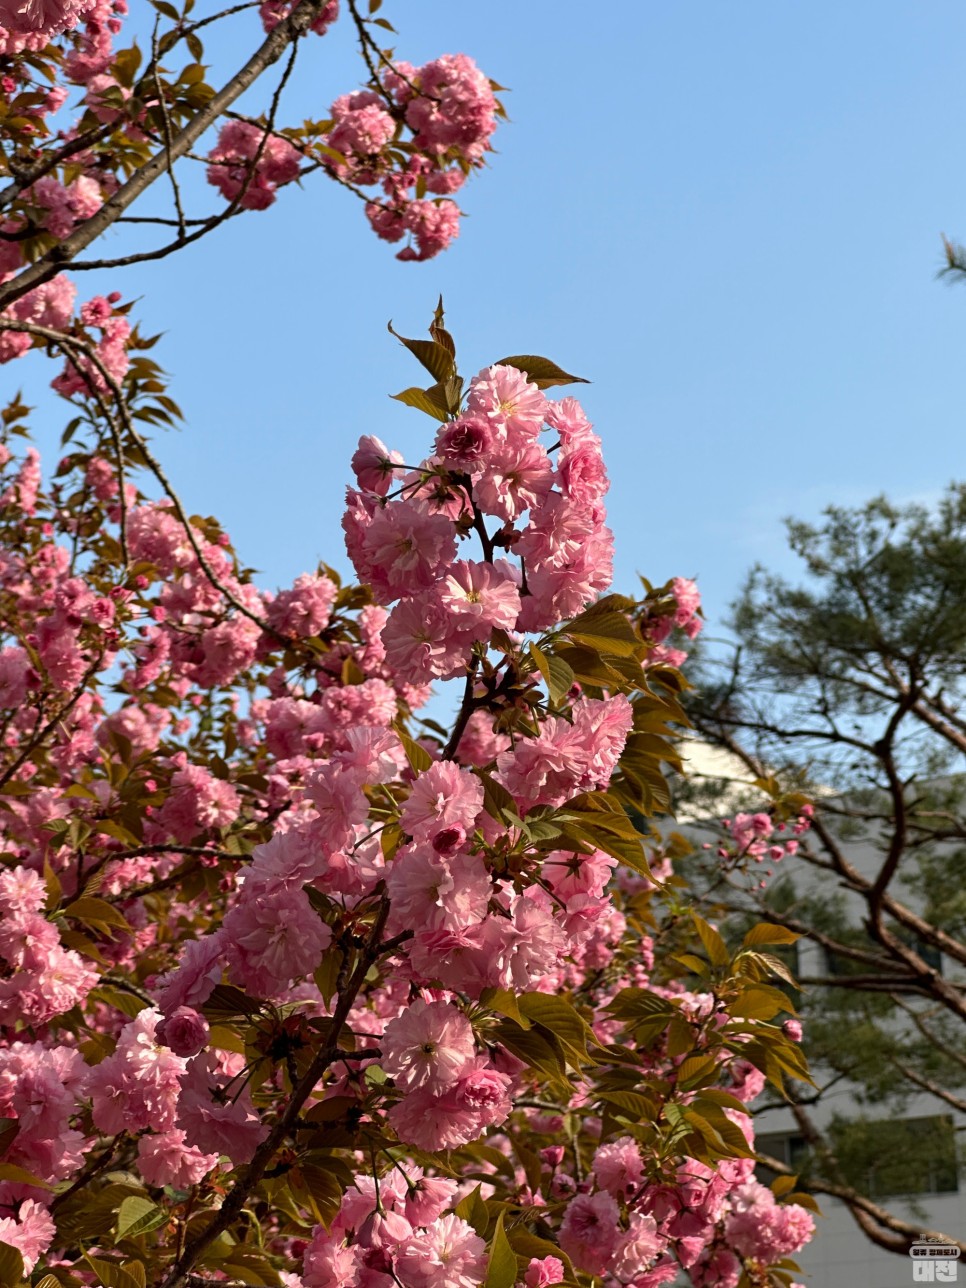 대전 겹벚꽃 명소 카이스트 개화시기 실시간